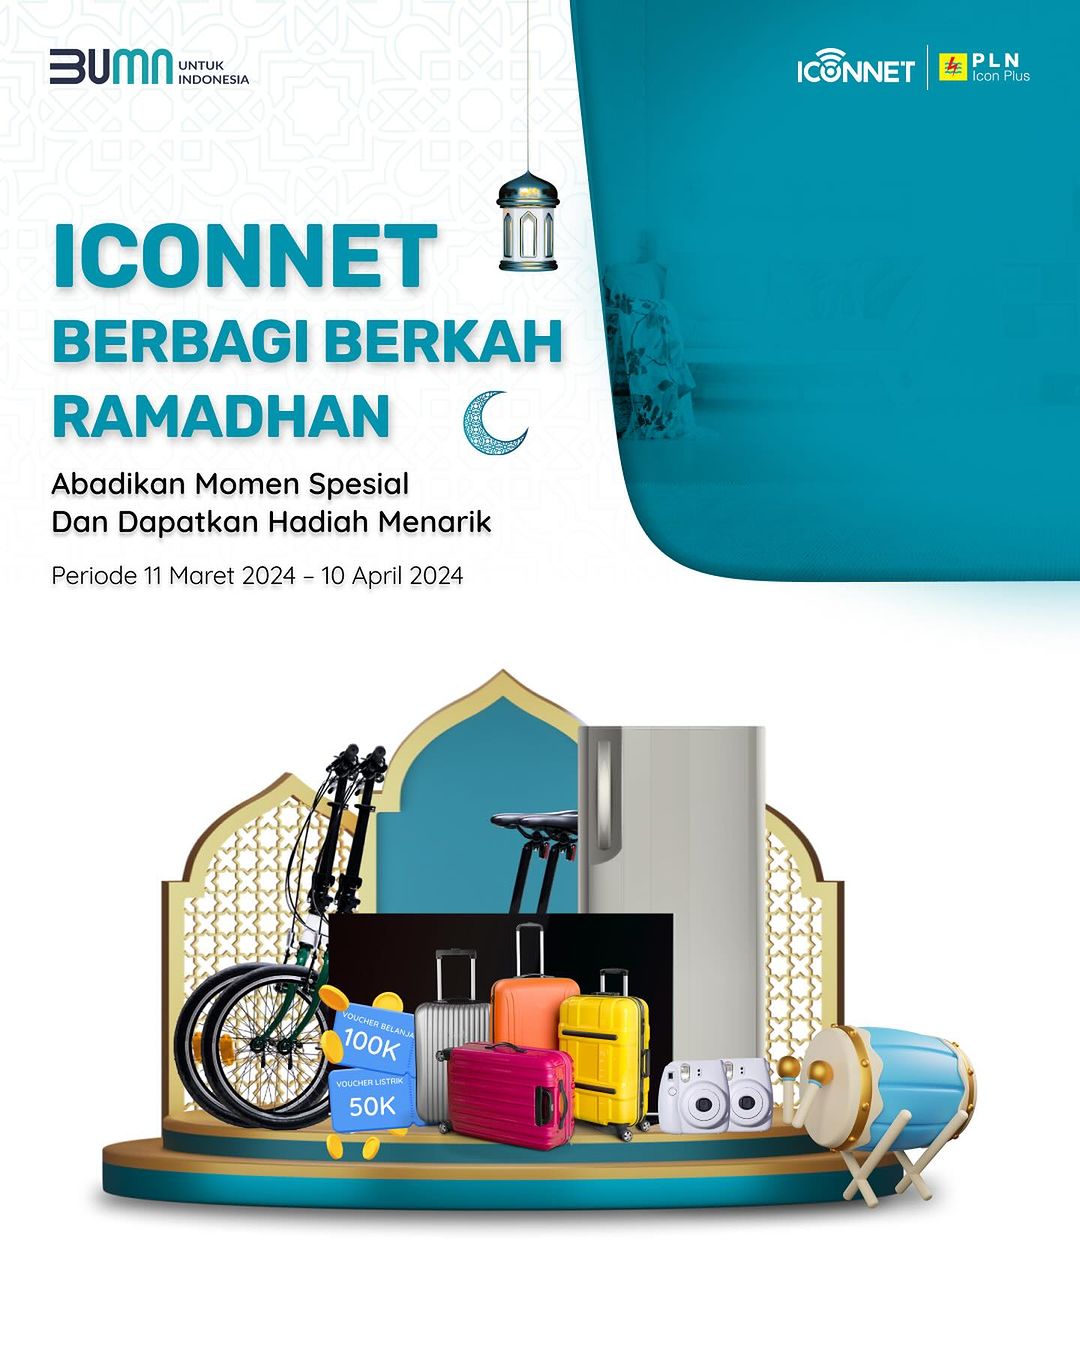 ICONNET mengadakan giveaway spesial Berbagi Berkah Ramadhan